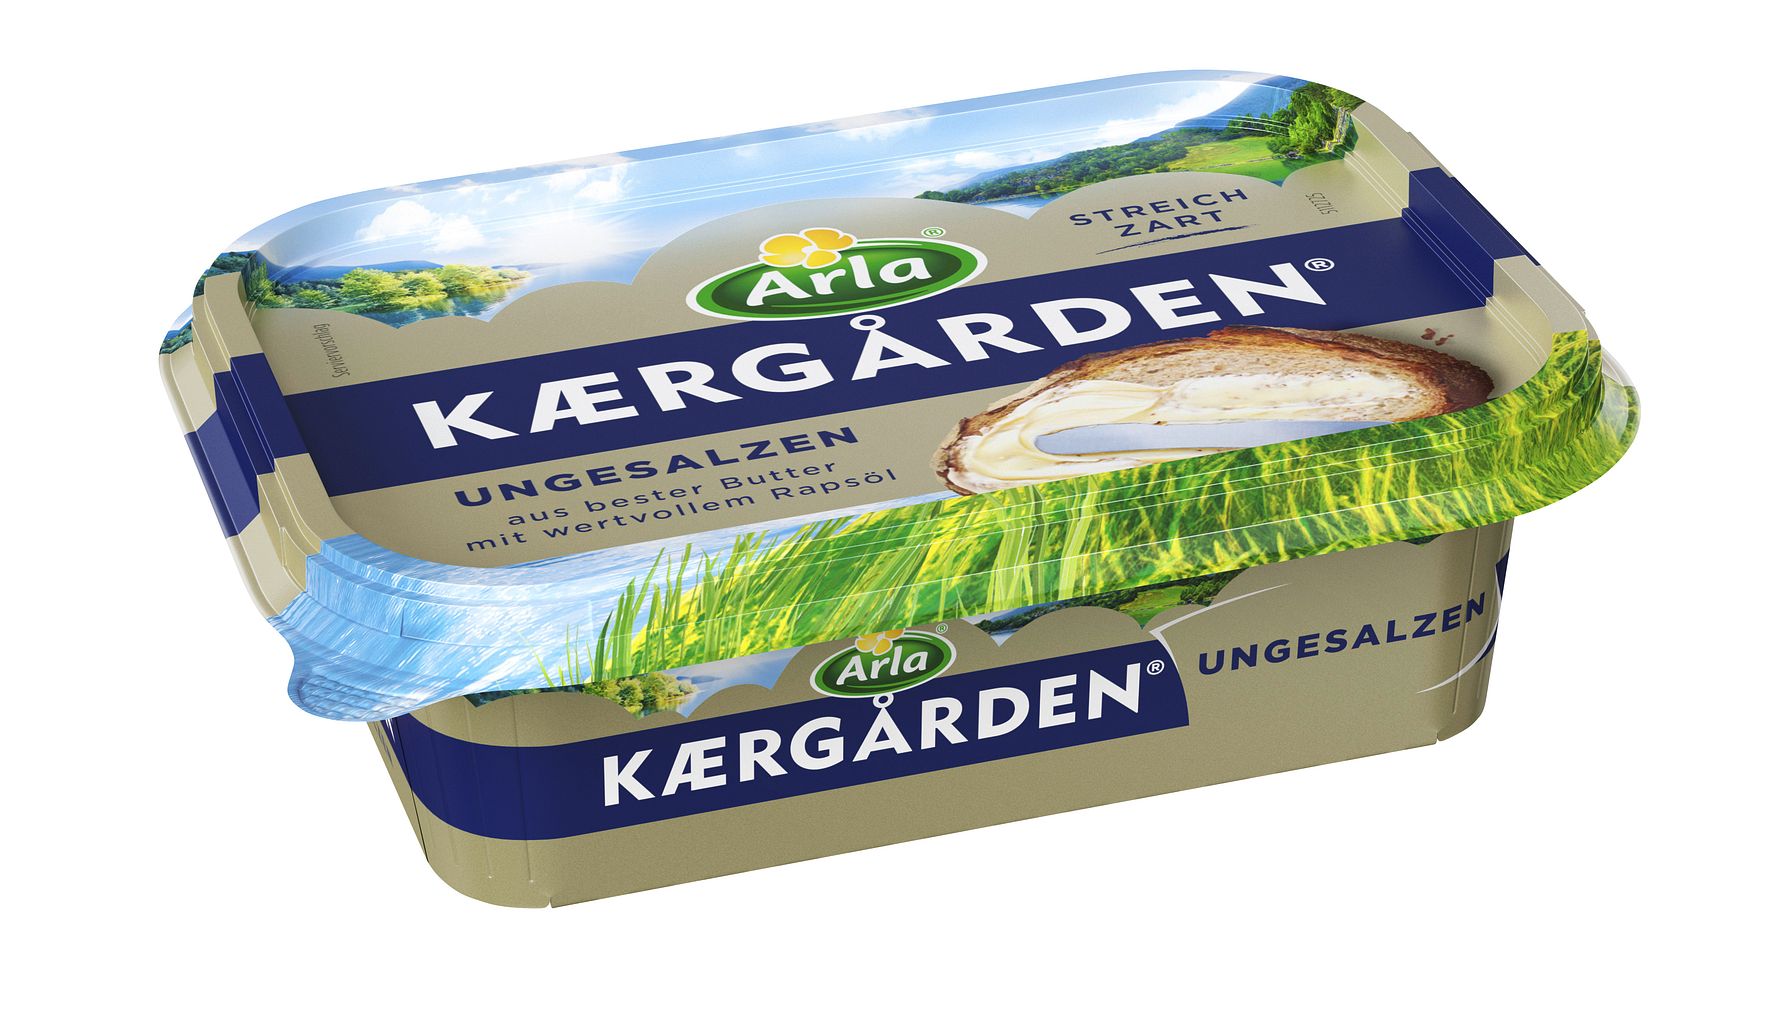 Kreislaufwirtschaft: Arla Foods setzt auf nachhaltigere Verpackungen - Nächster großer Schritt mit  Arla Kærgården